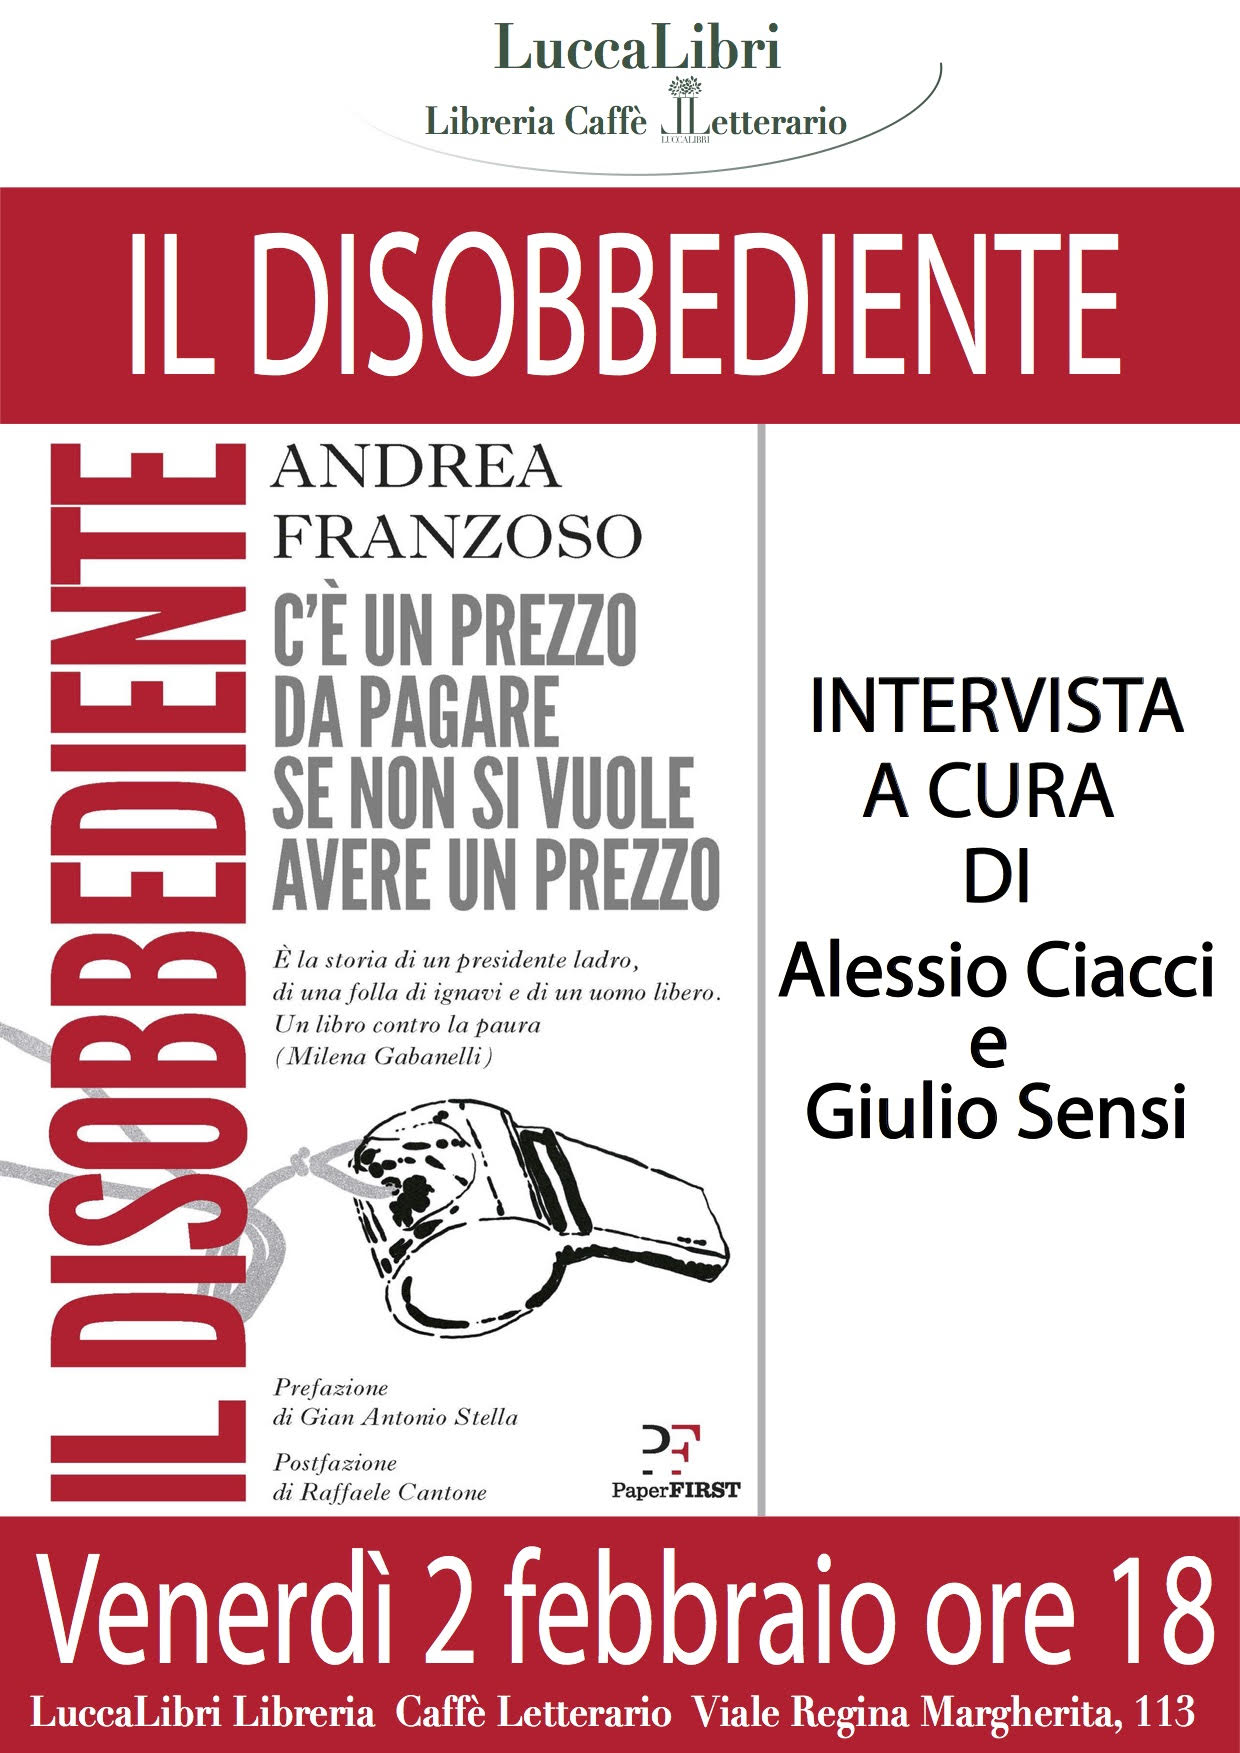 Andrea Franzoso a Lucca alla presentazione del suo libro contro la corruzione